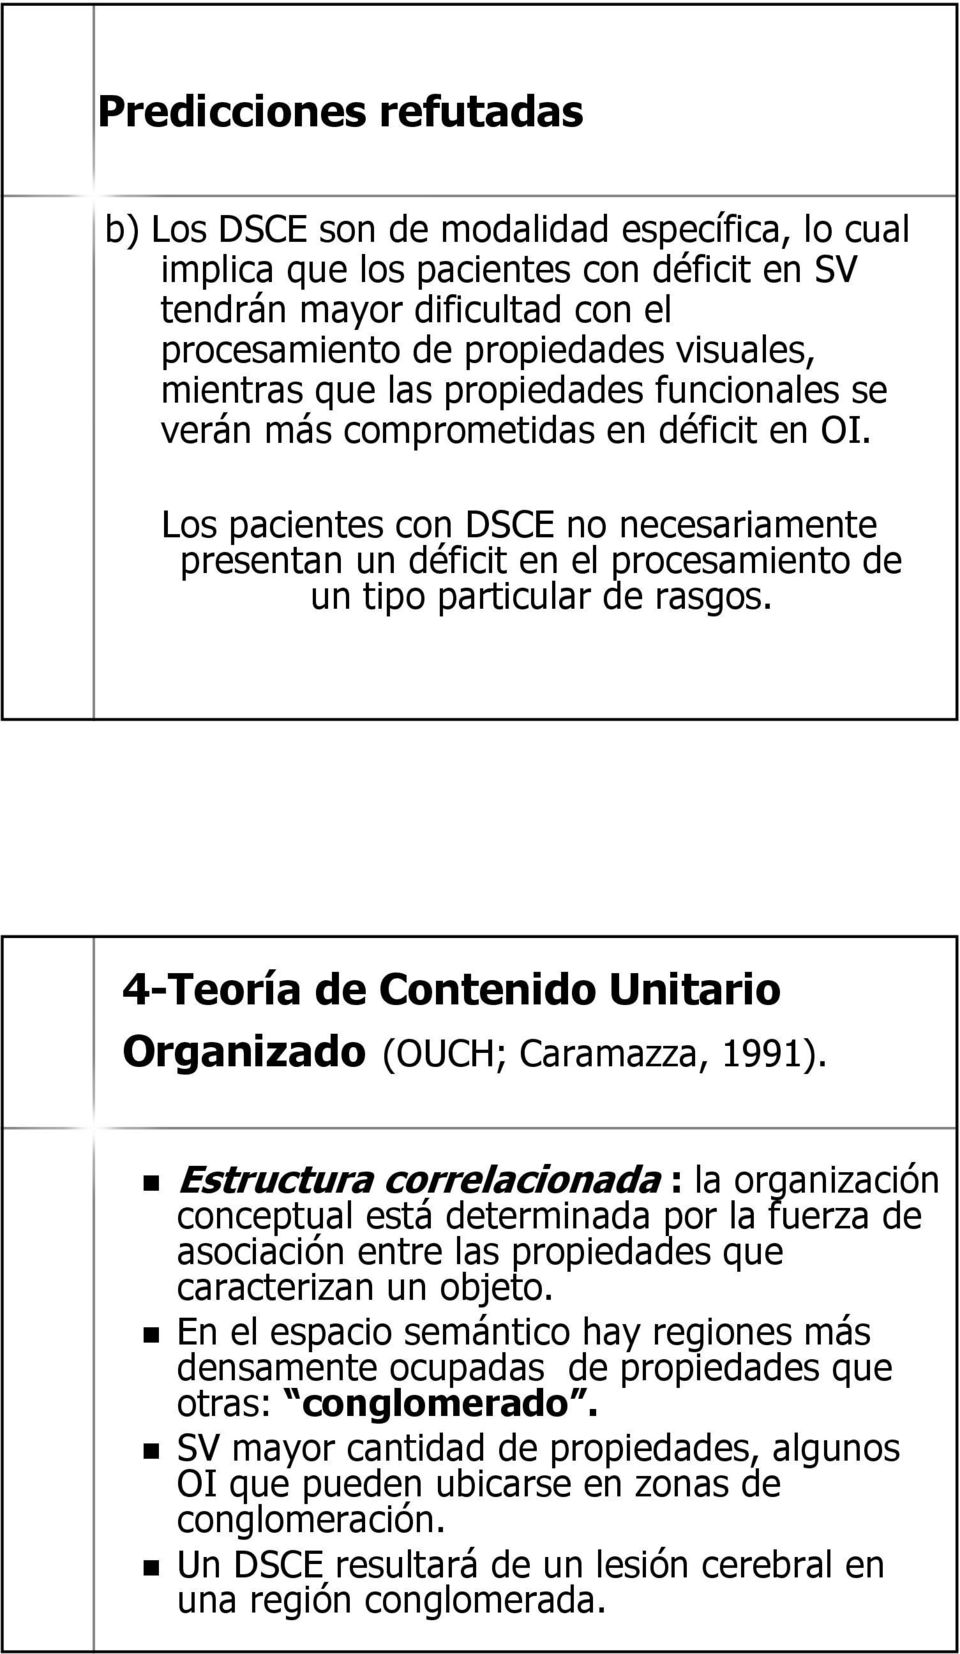 4-Teoría de Contenido Unitario Organizado (OUCH; Caramazza, 1991).